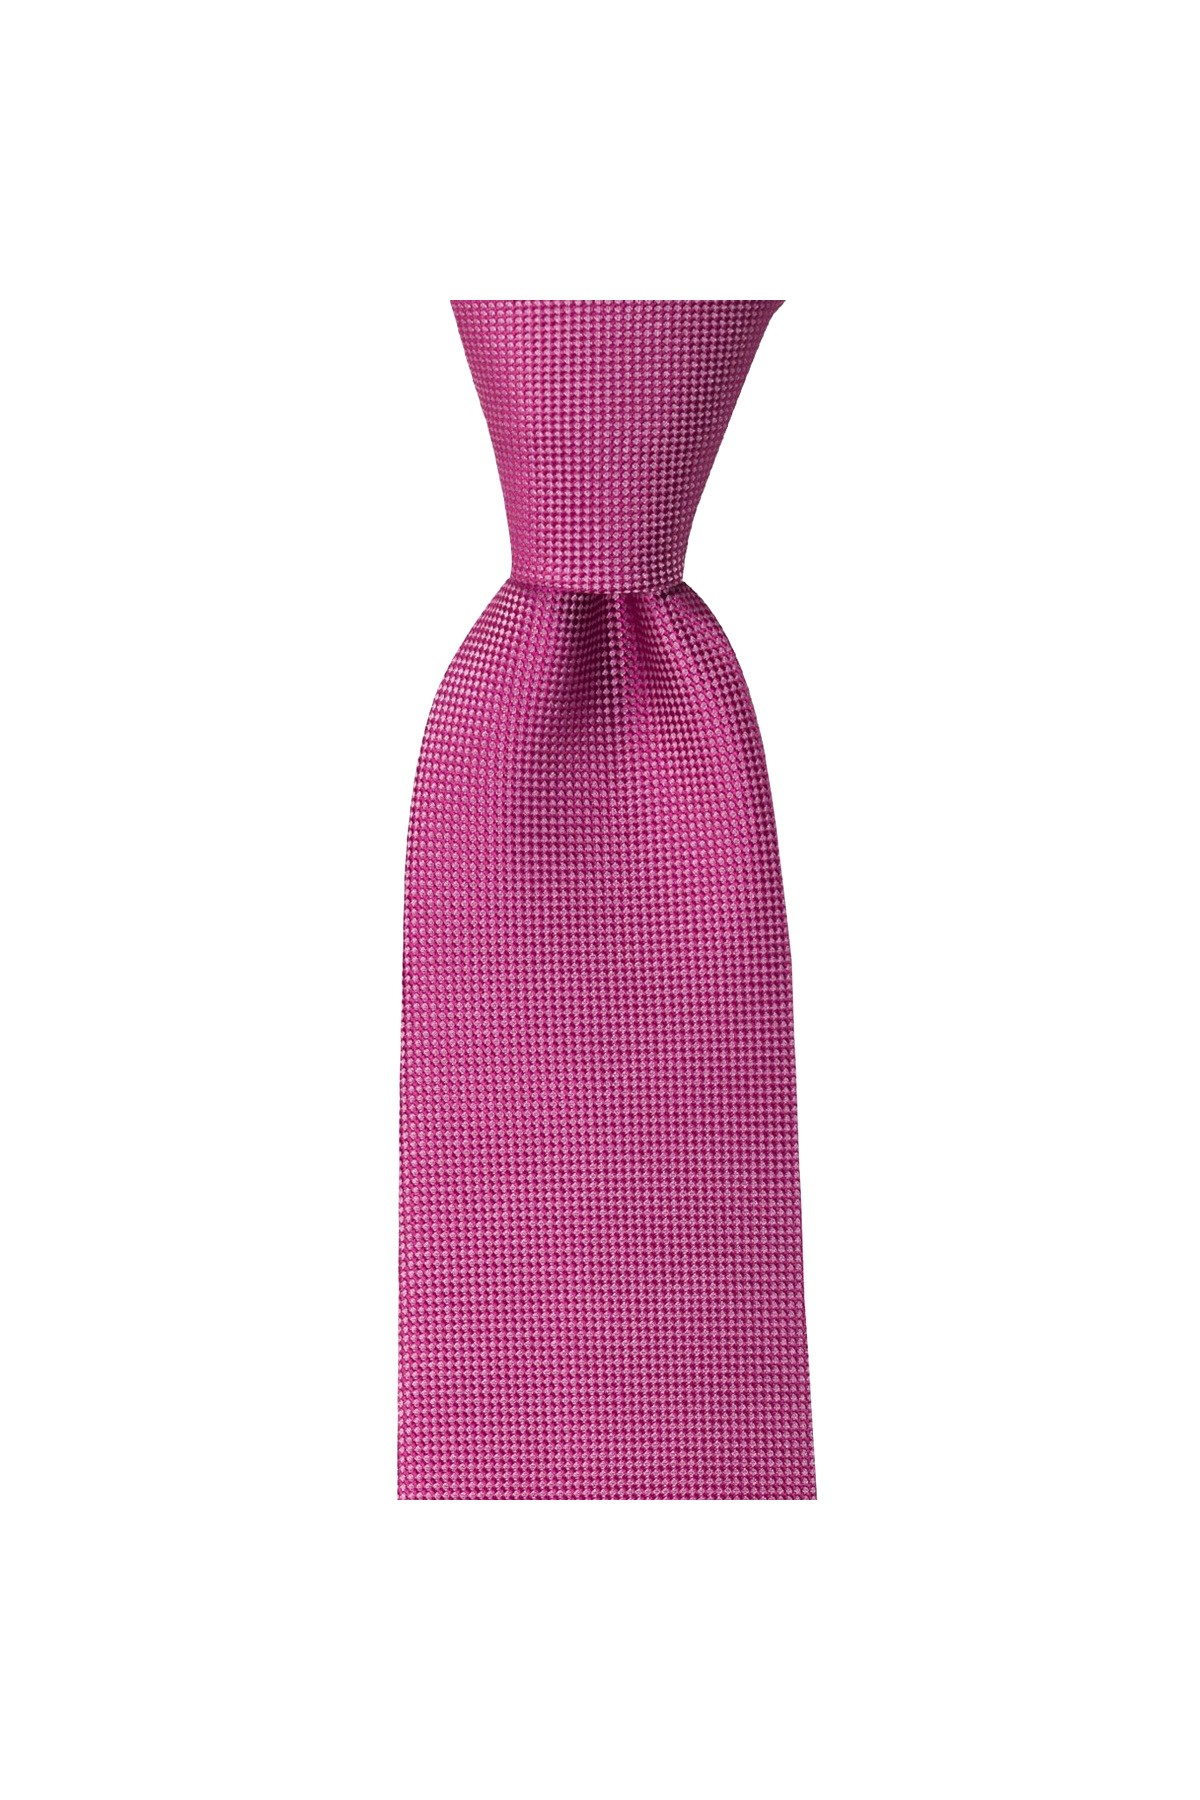 Düz renkli 8 cm genişliğinde mendilli kravat - Pembe